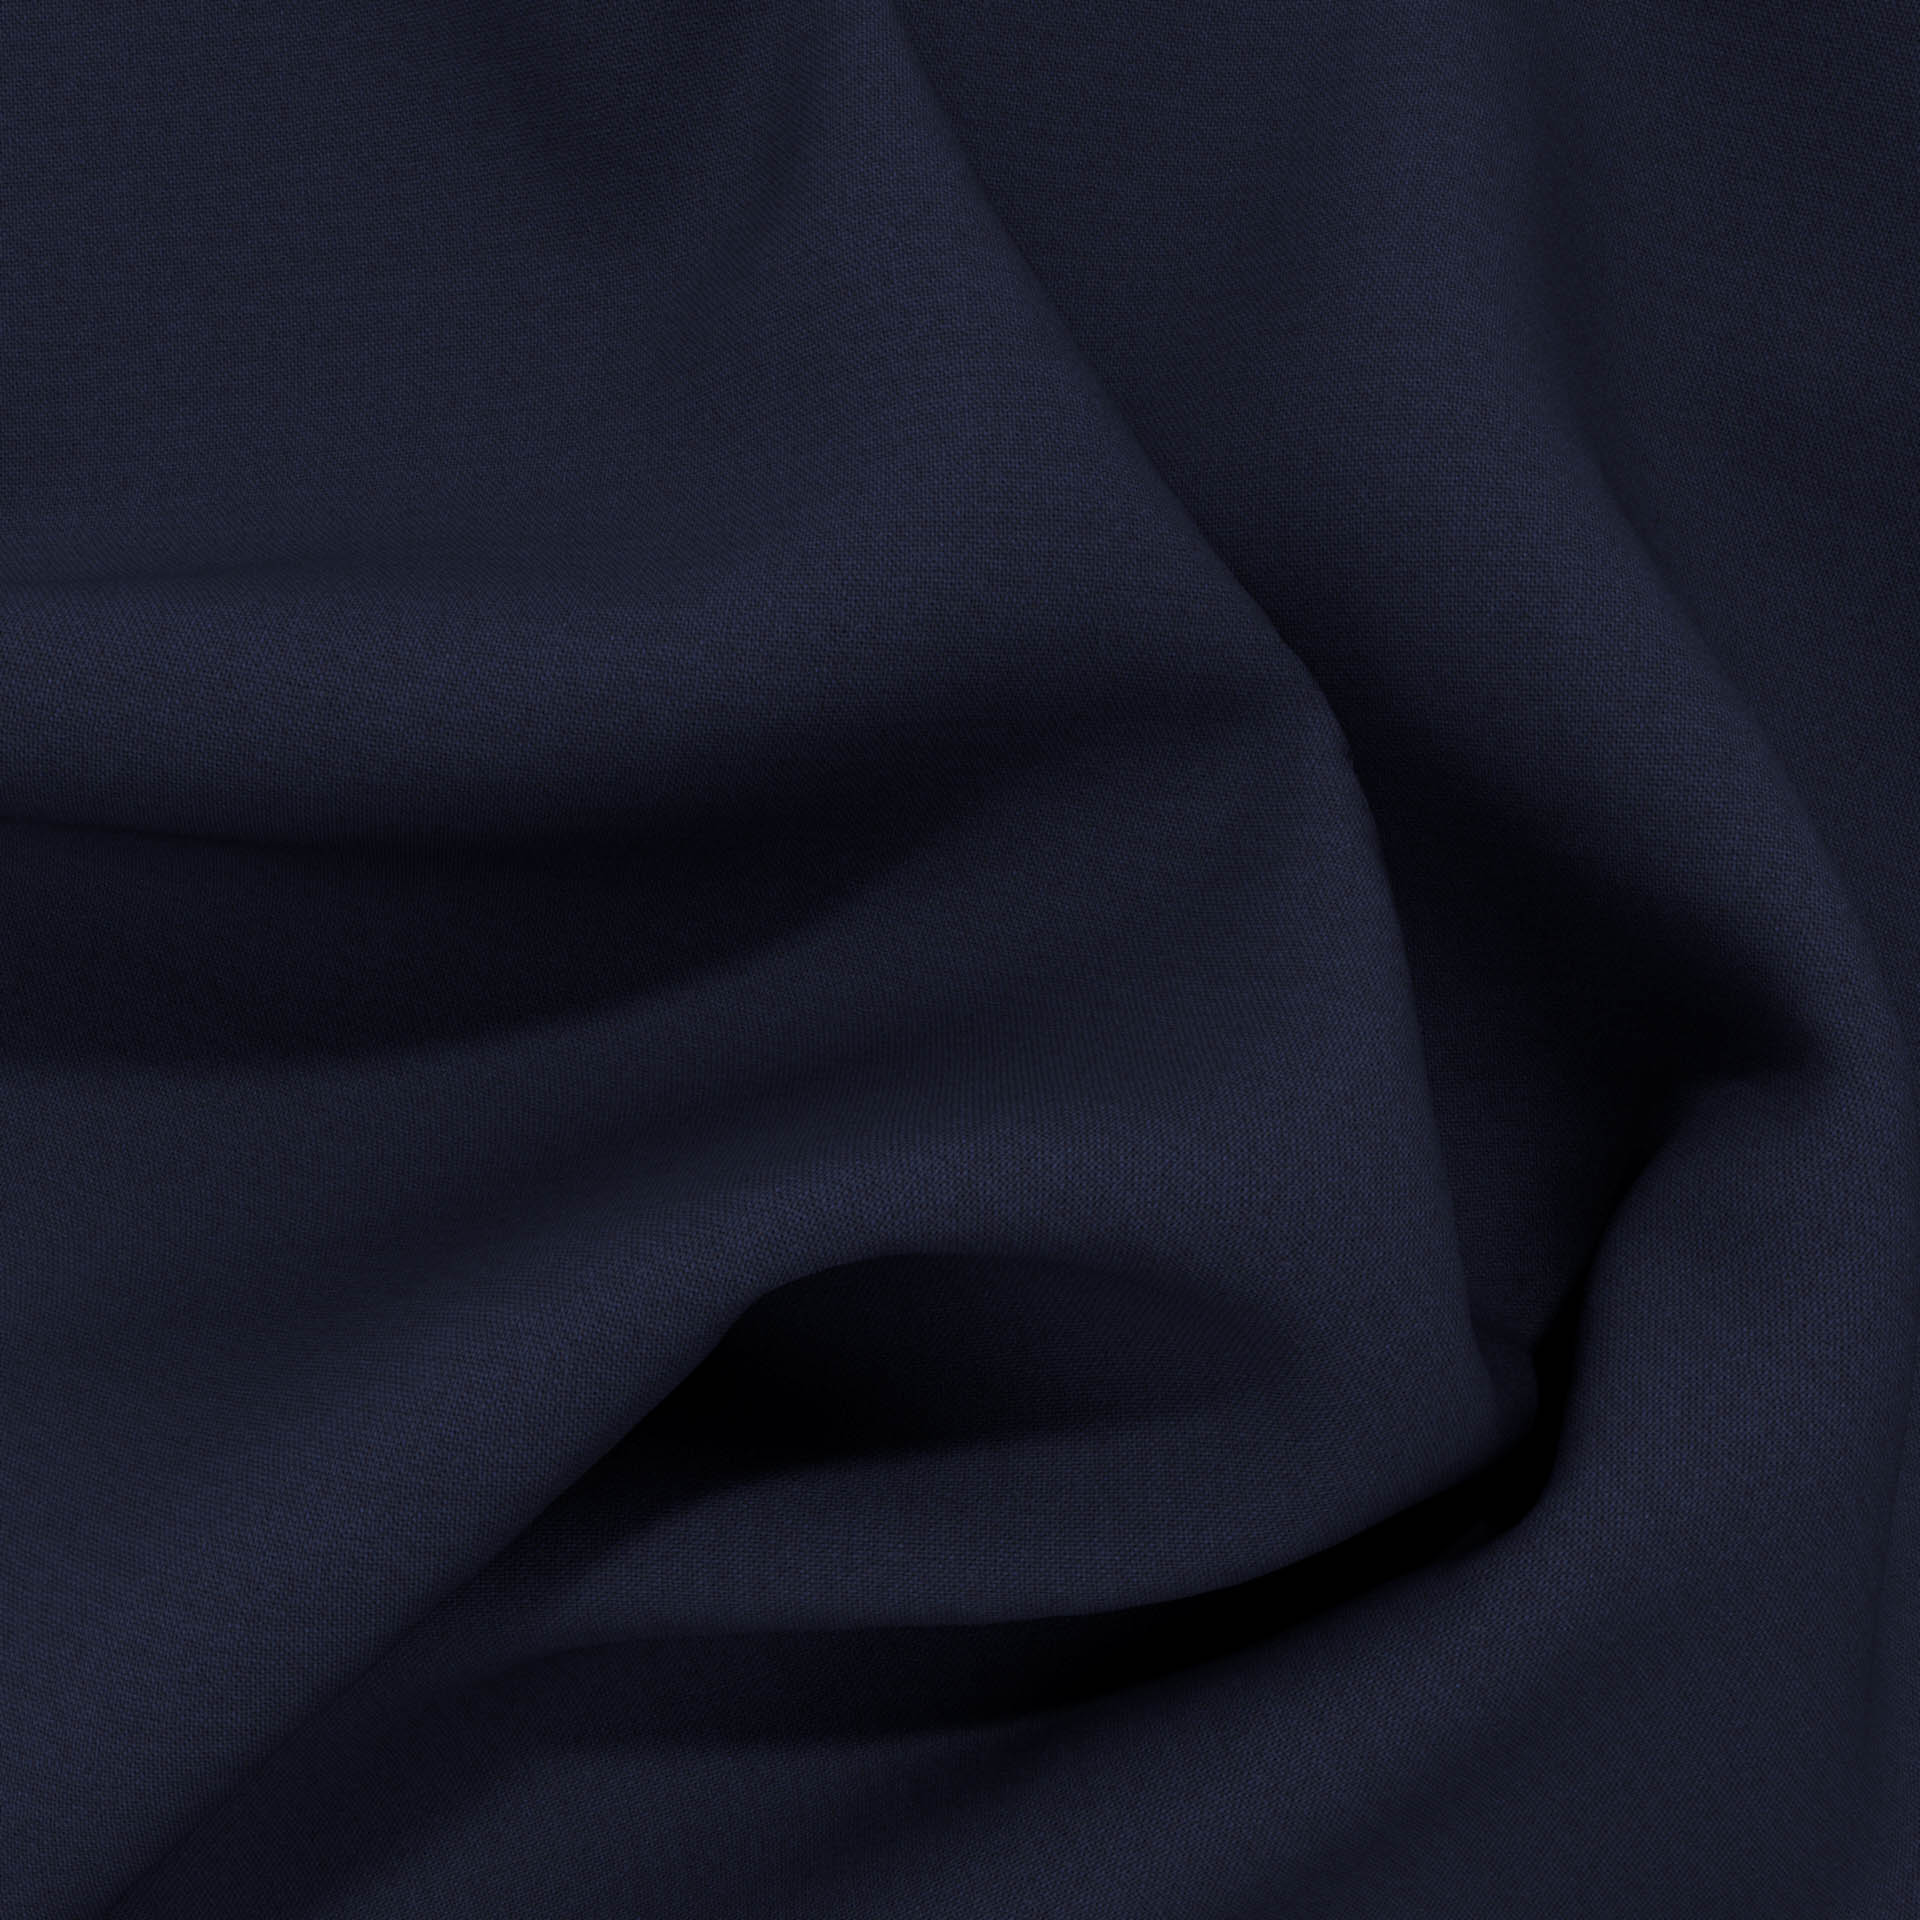 Custom made suit - plain-navy-blue-Italian fabric-onceaday